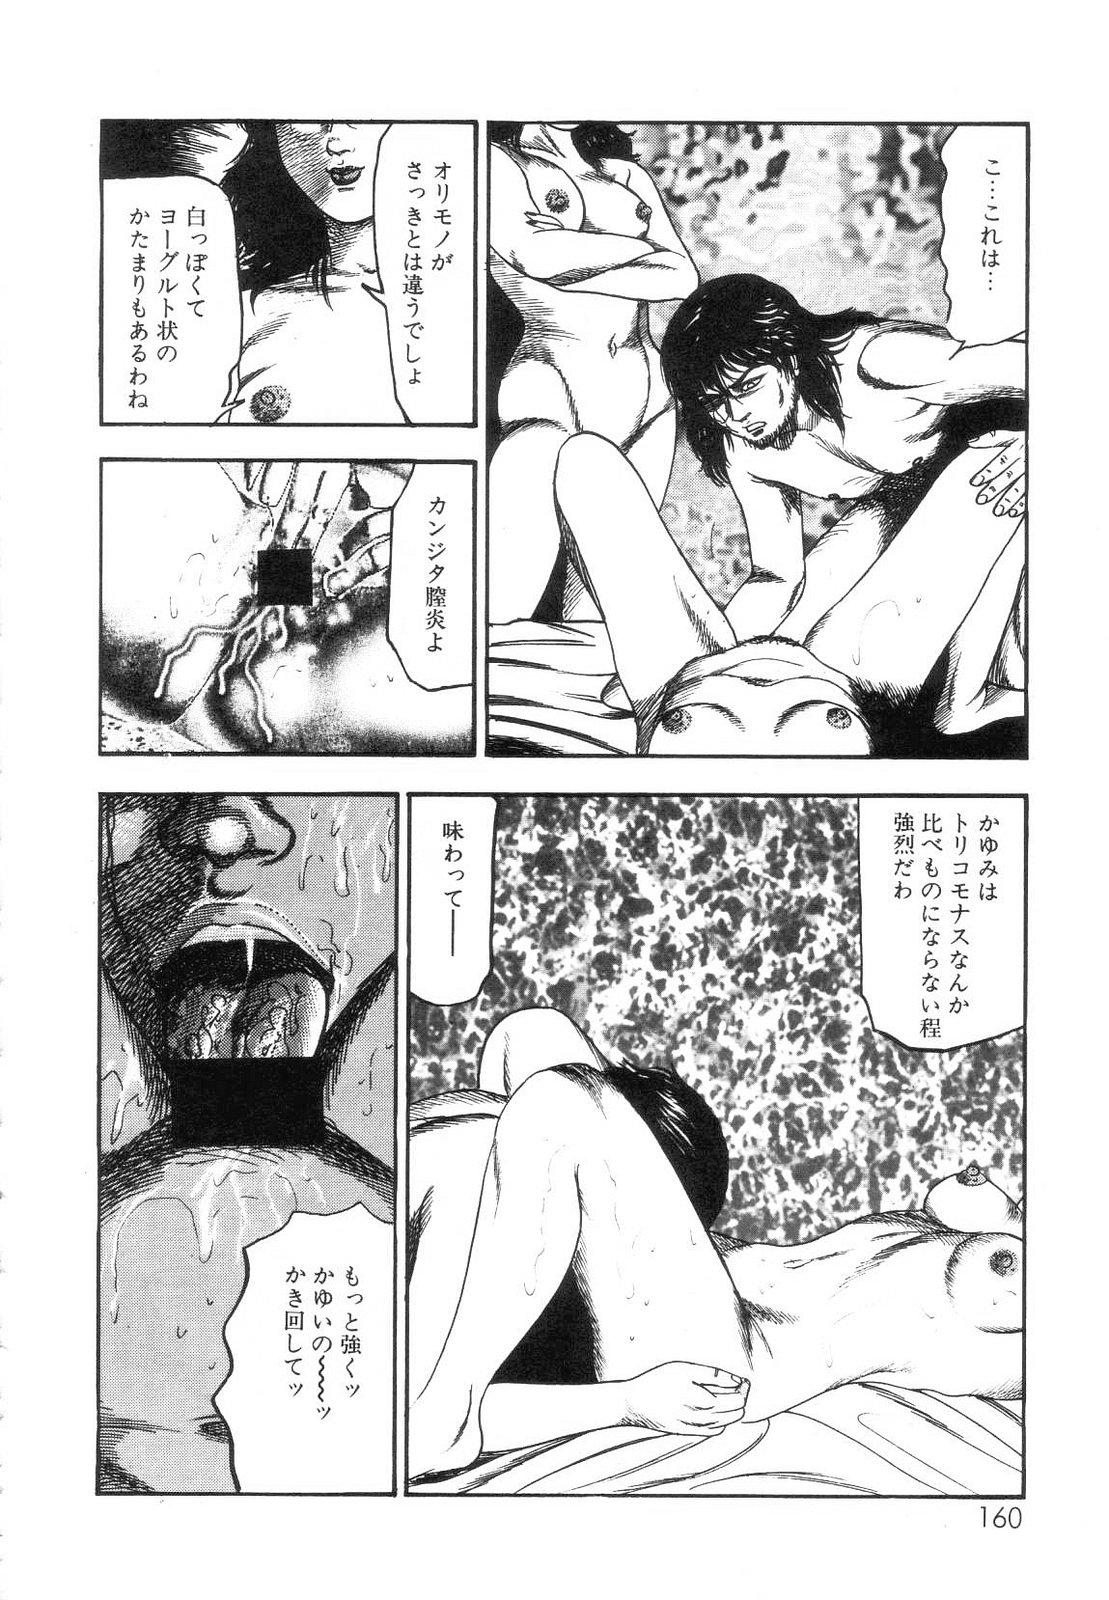 Shiro no Mokushiroku Vol. 7 - Shiiku Ningyou Erika no Shou 161